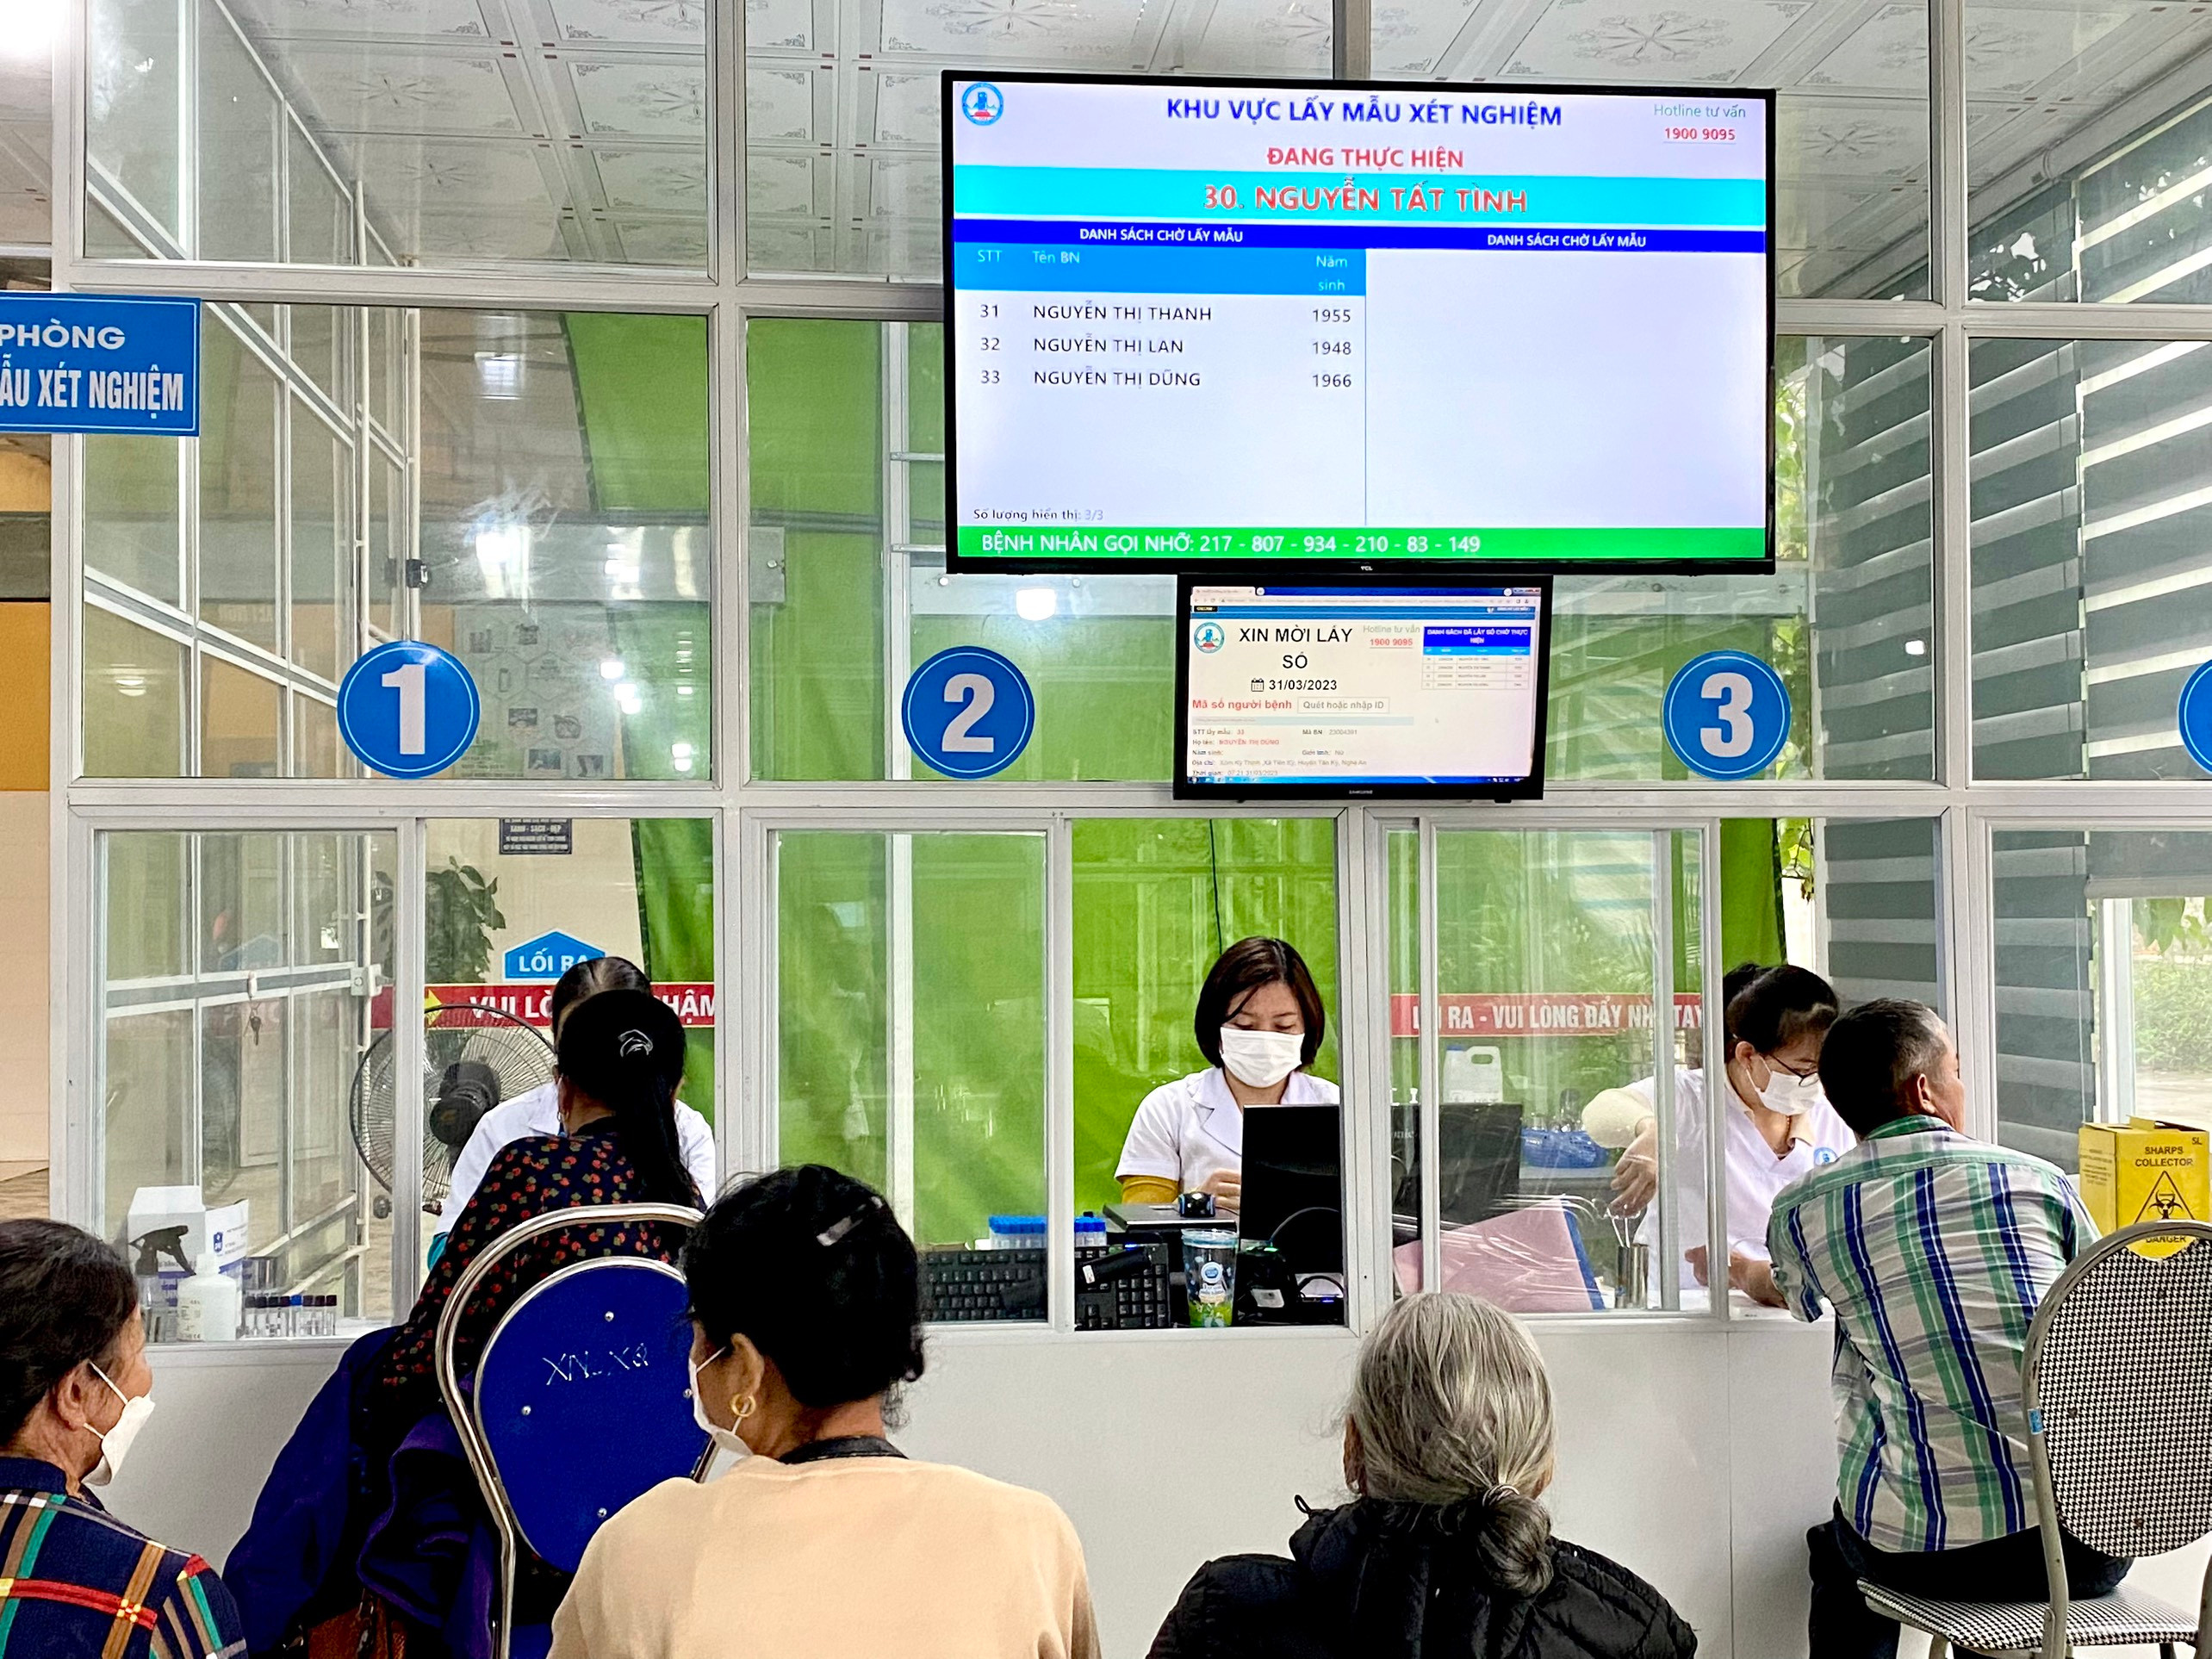 Hệ thống lấy số tự động tại Trung tâm Y tế huyện Tân Kỳ giúp giảm thời gian chờ đợi của bệnh nhân. Ảnh Hương Trà.jpg